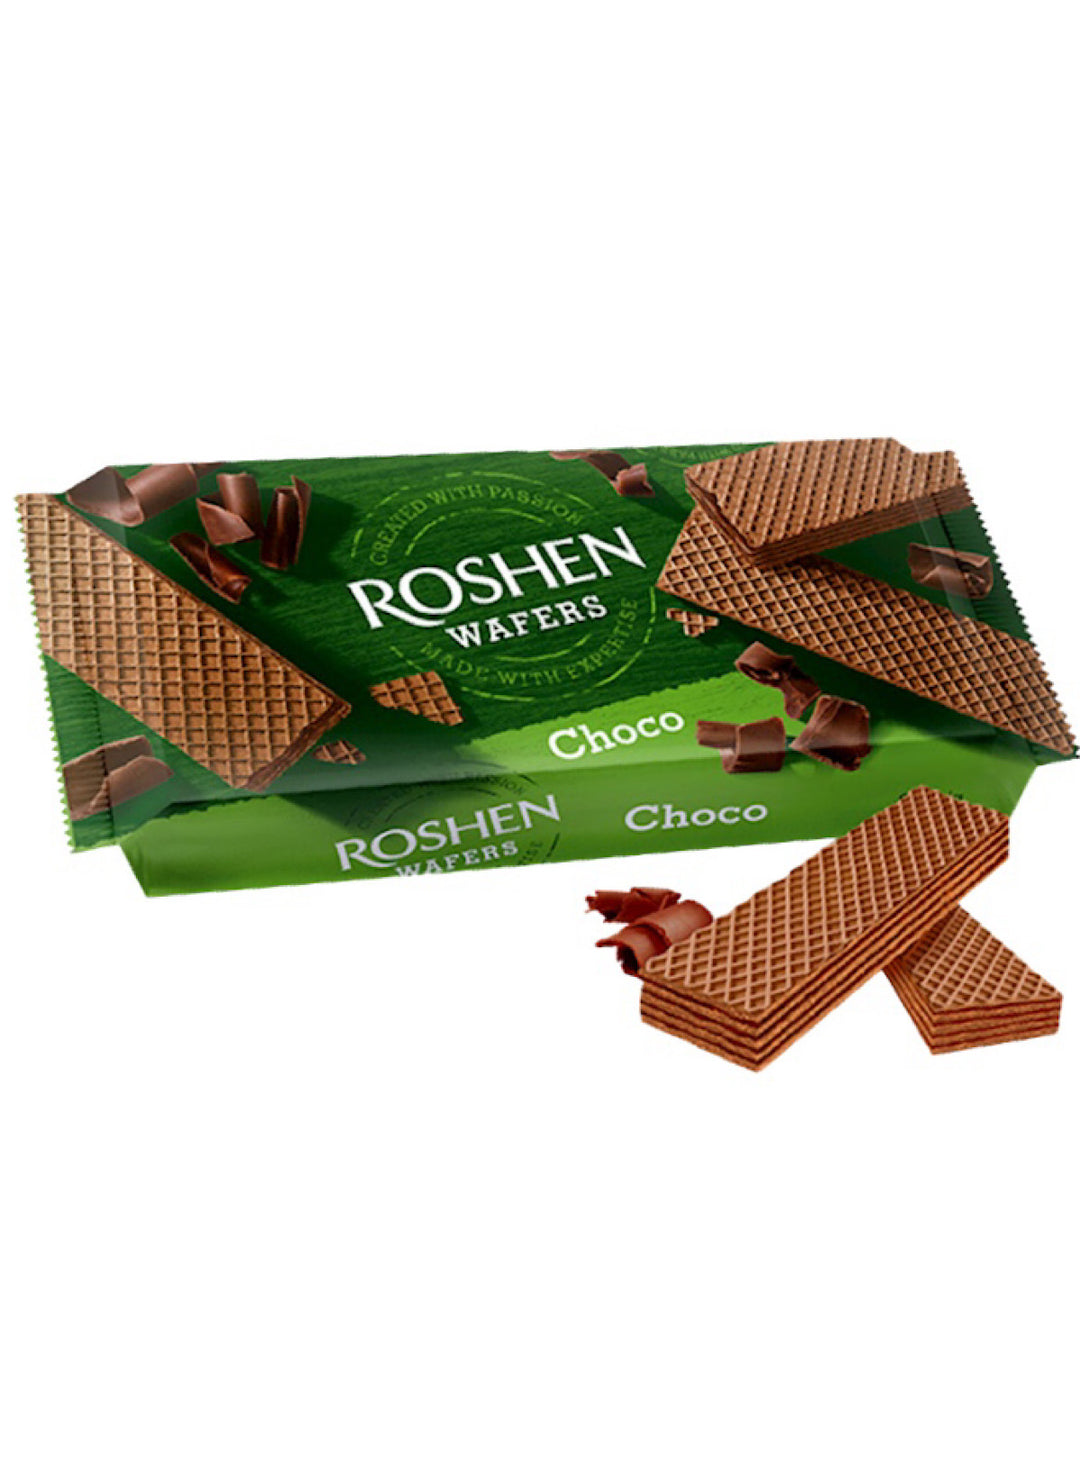 Wafers Chocolate - Roshen- 216g